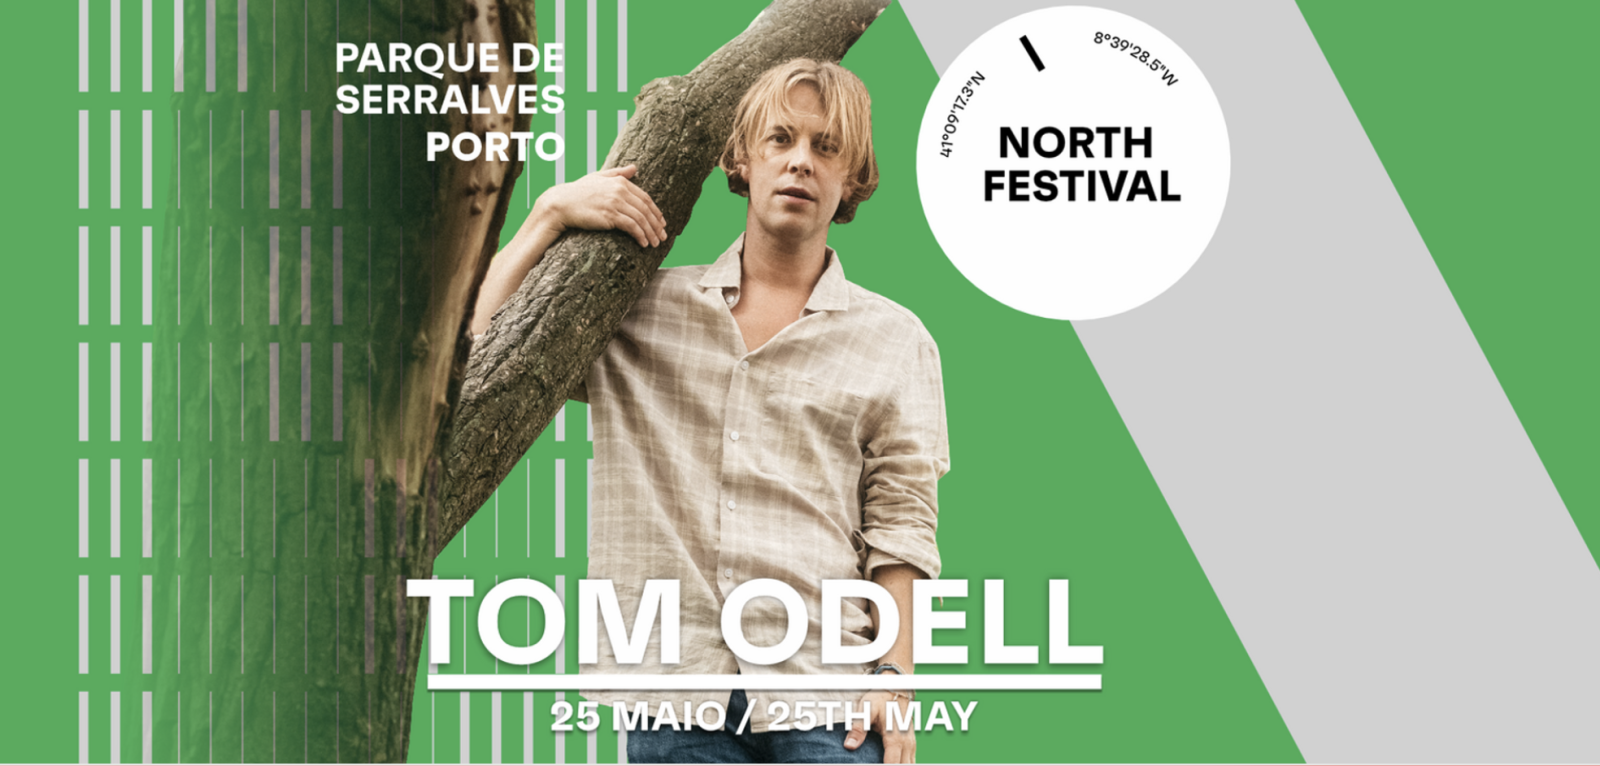 Tom Odell é a mais recente confirmação do North Festival